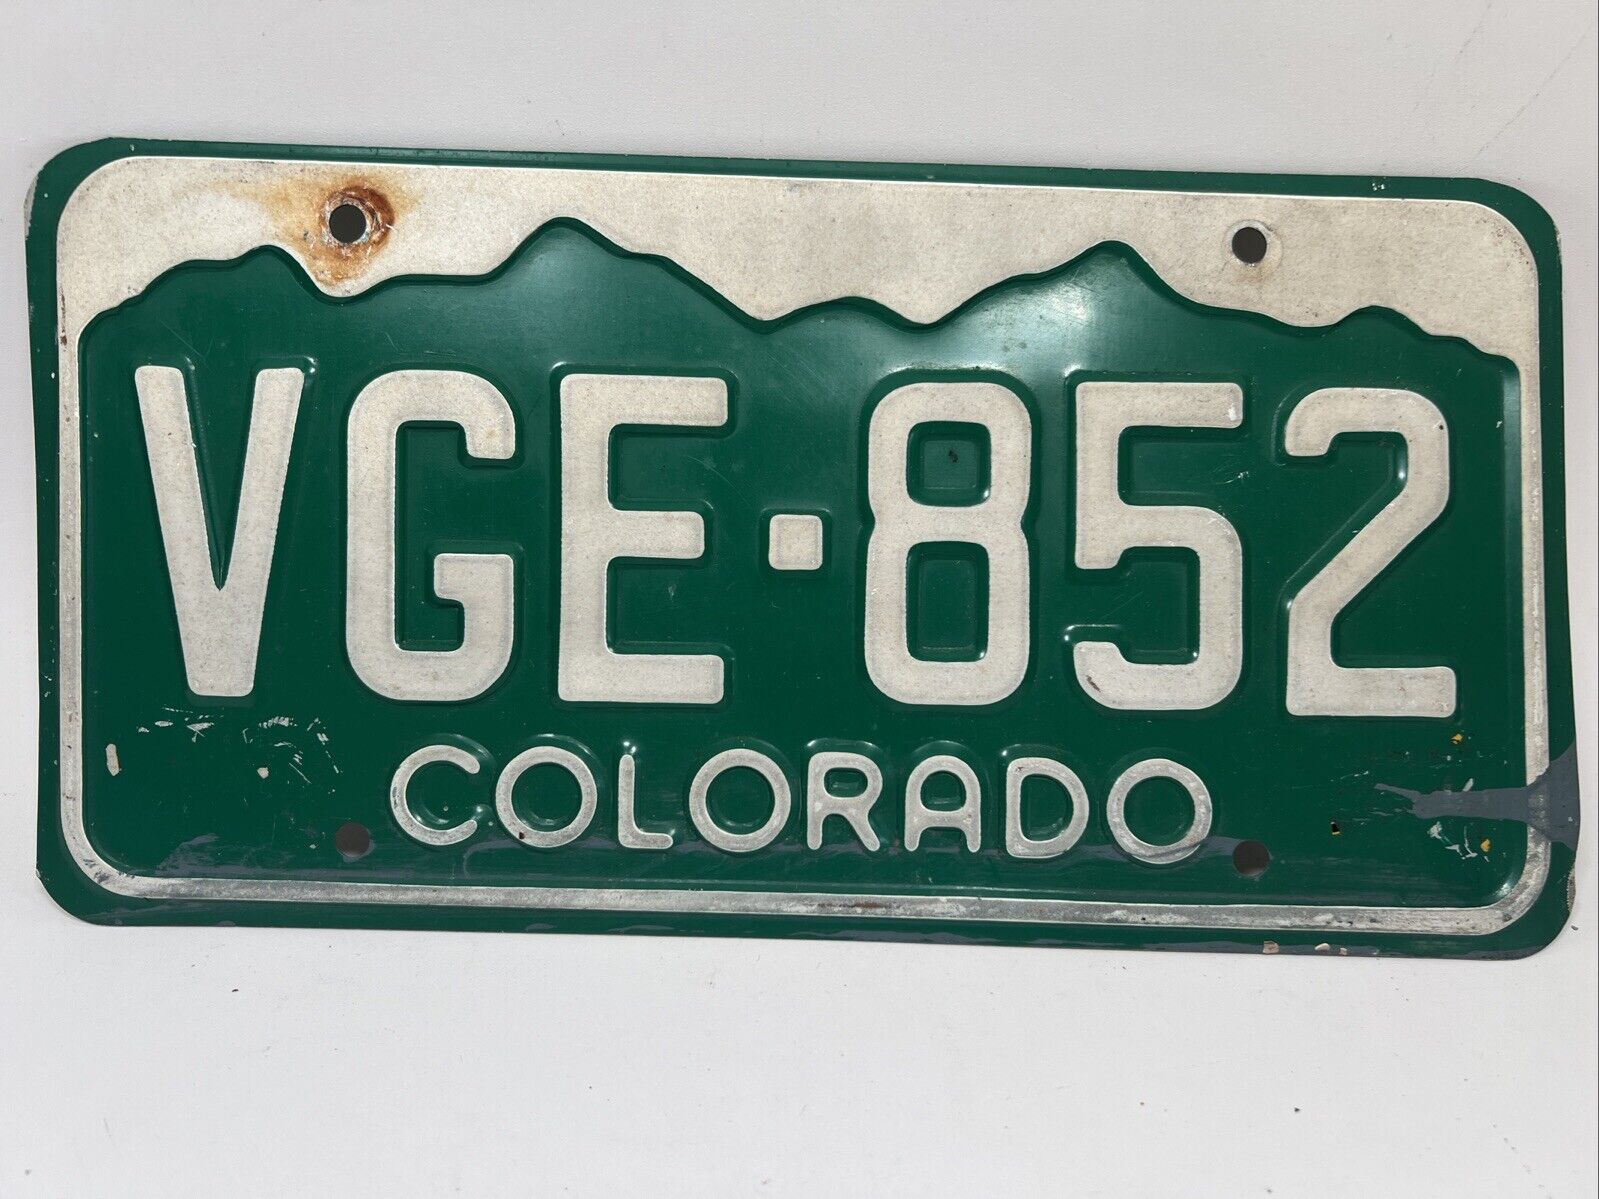 Vintage 1960’s Colorado License Plate VGE852 Antique Original